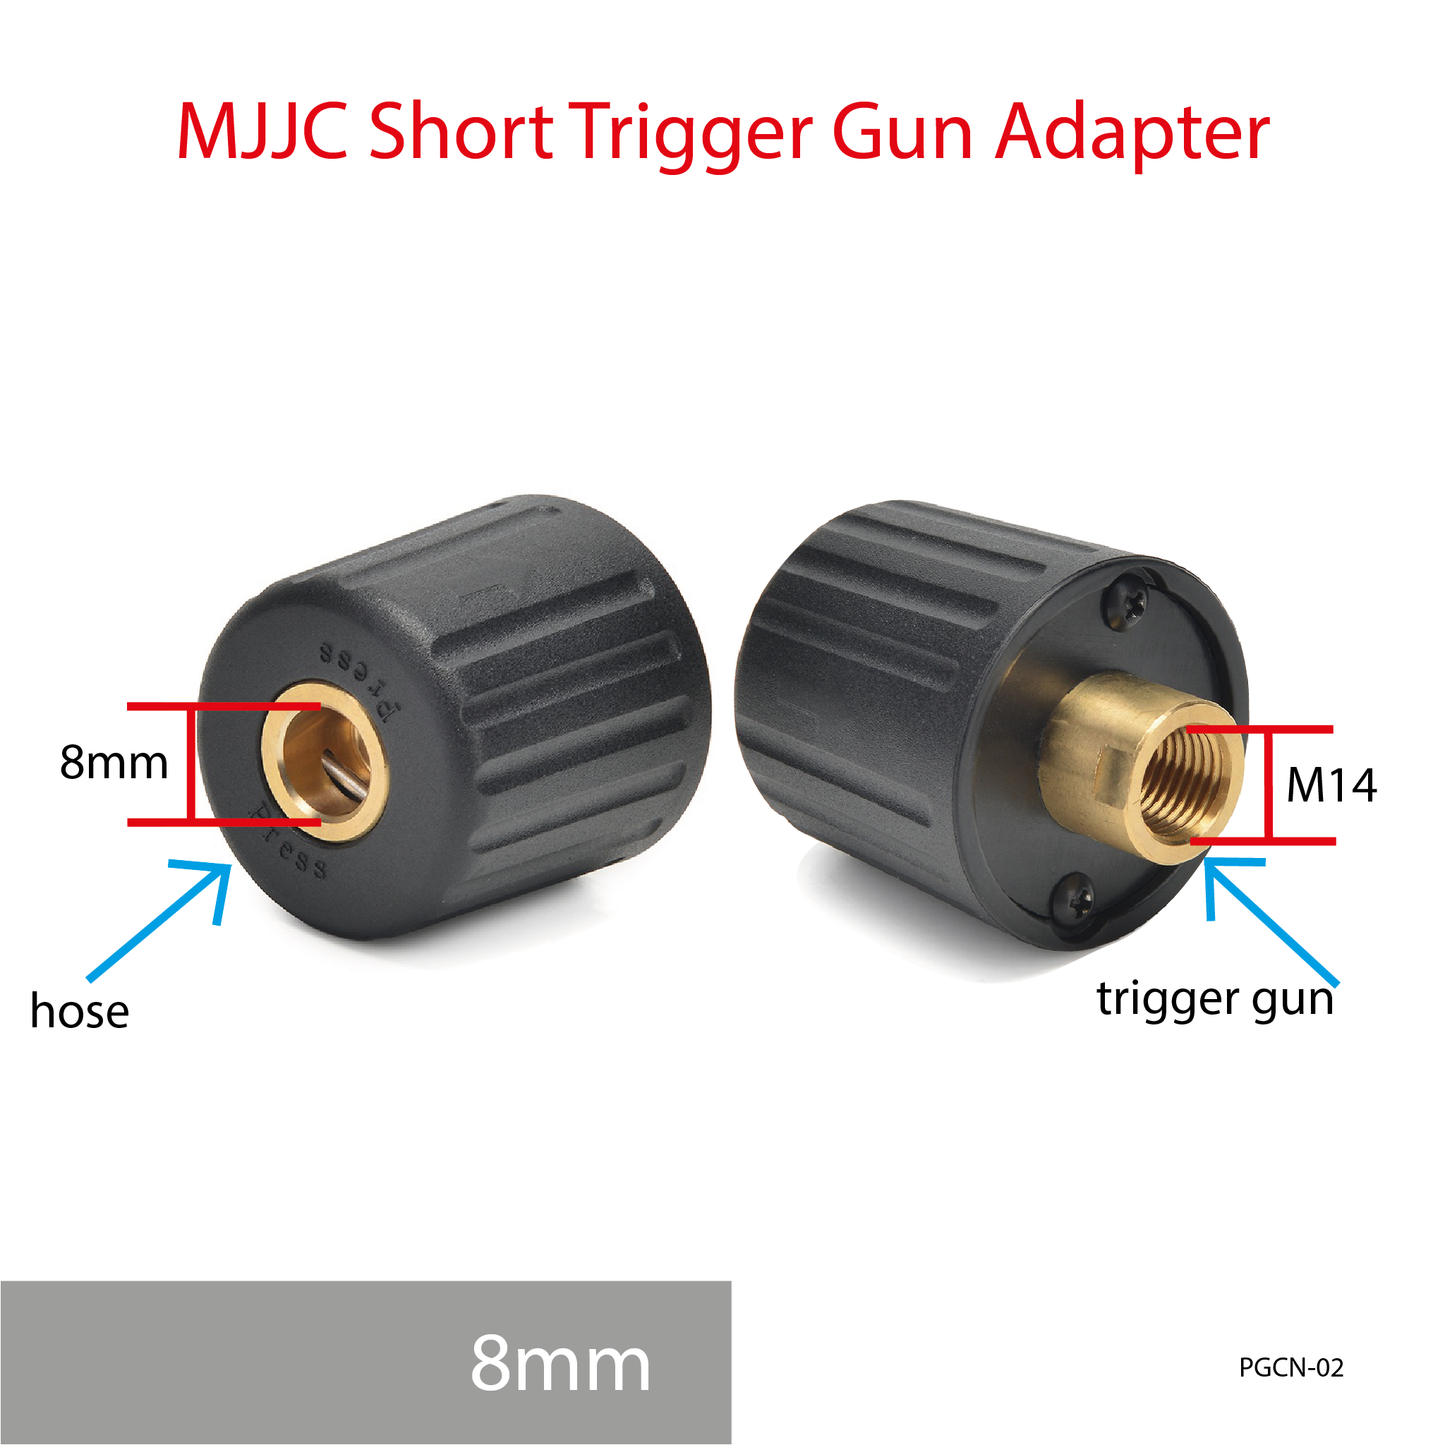 MJJC Short Trigger Gun Adapter 8mm hose tips